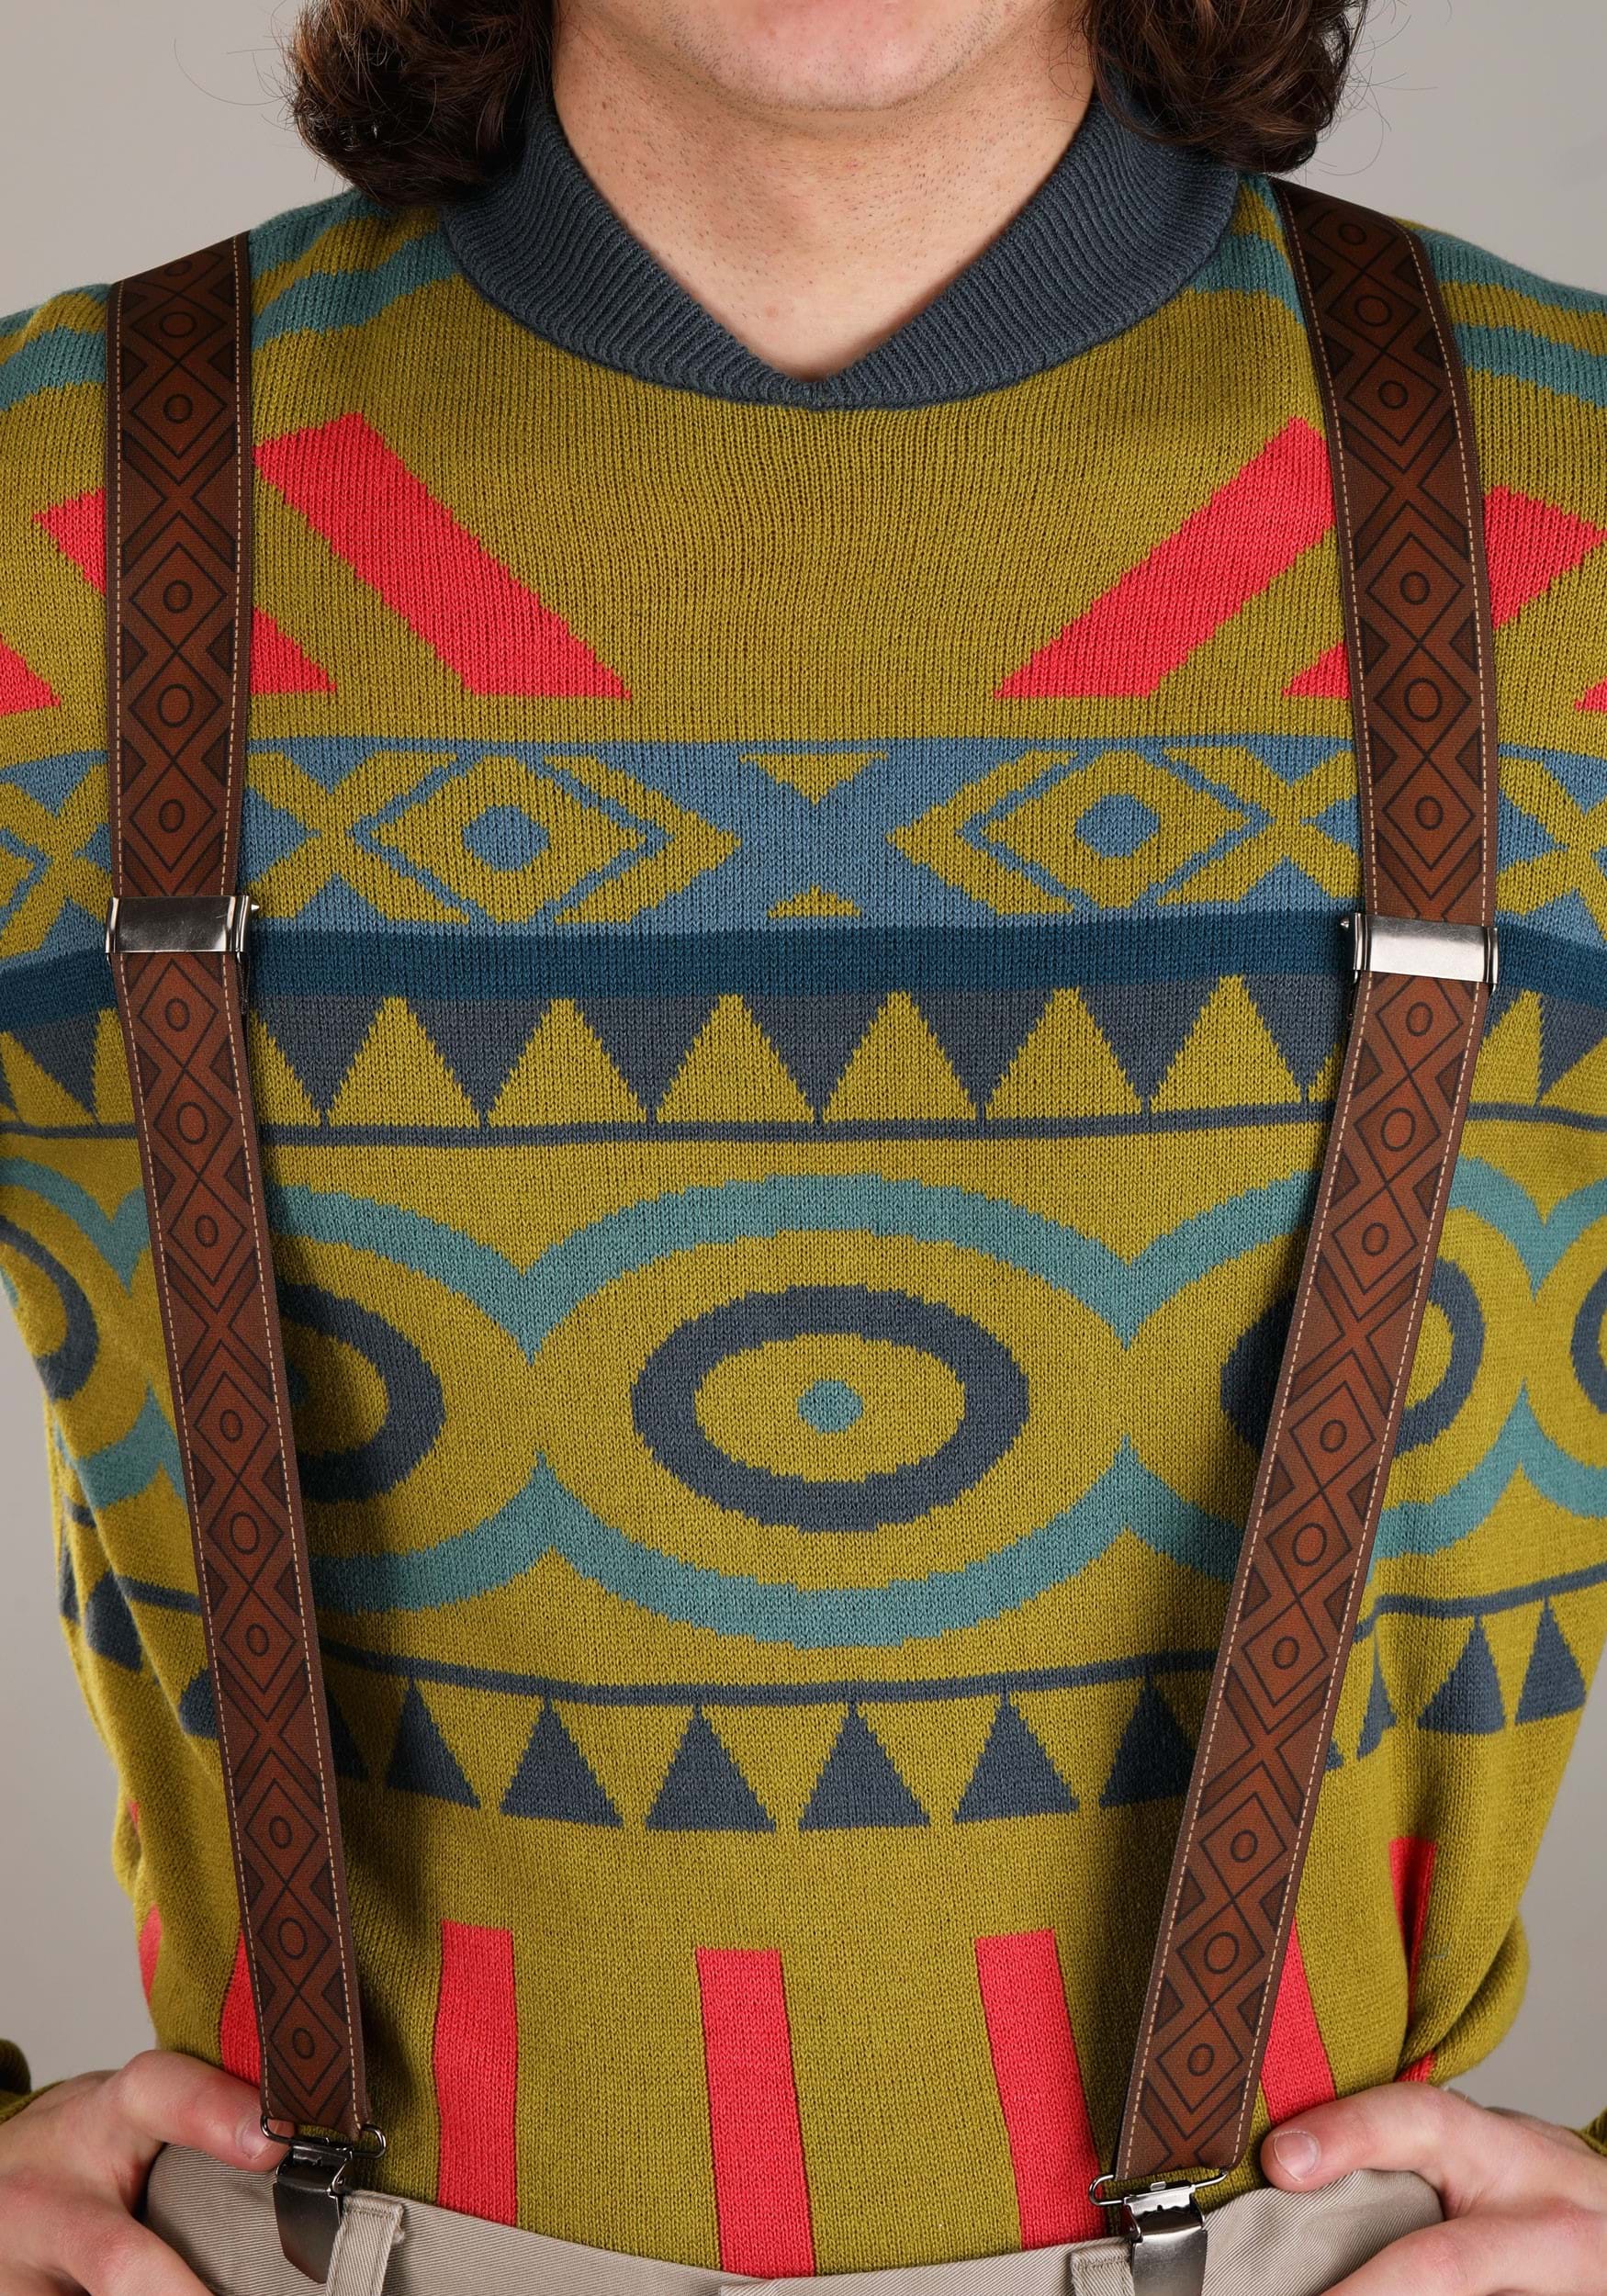 Oaken Hat, Sweater & Suspenders Kit